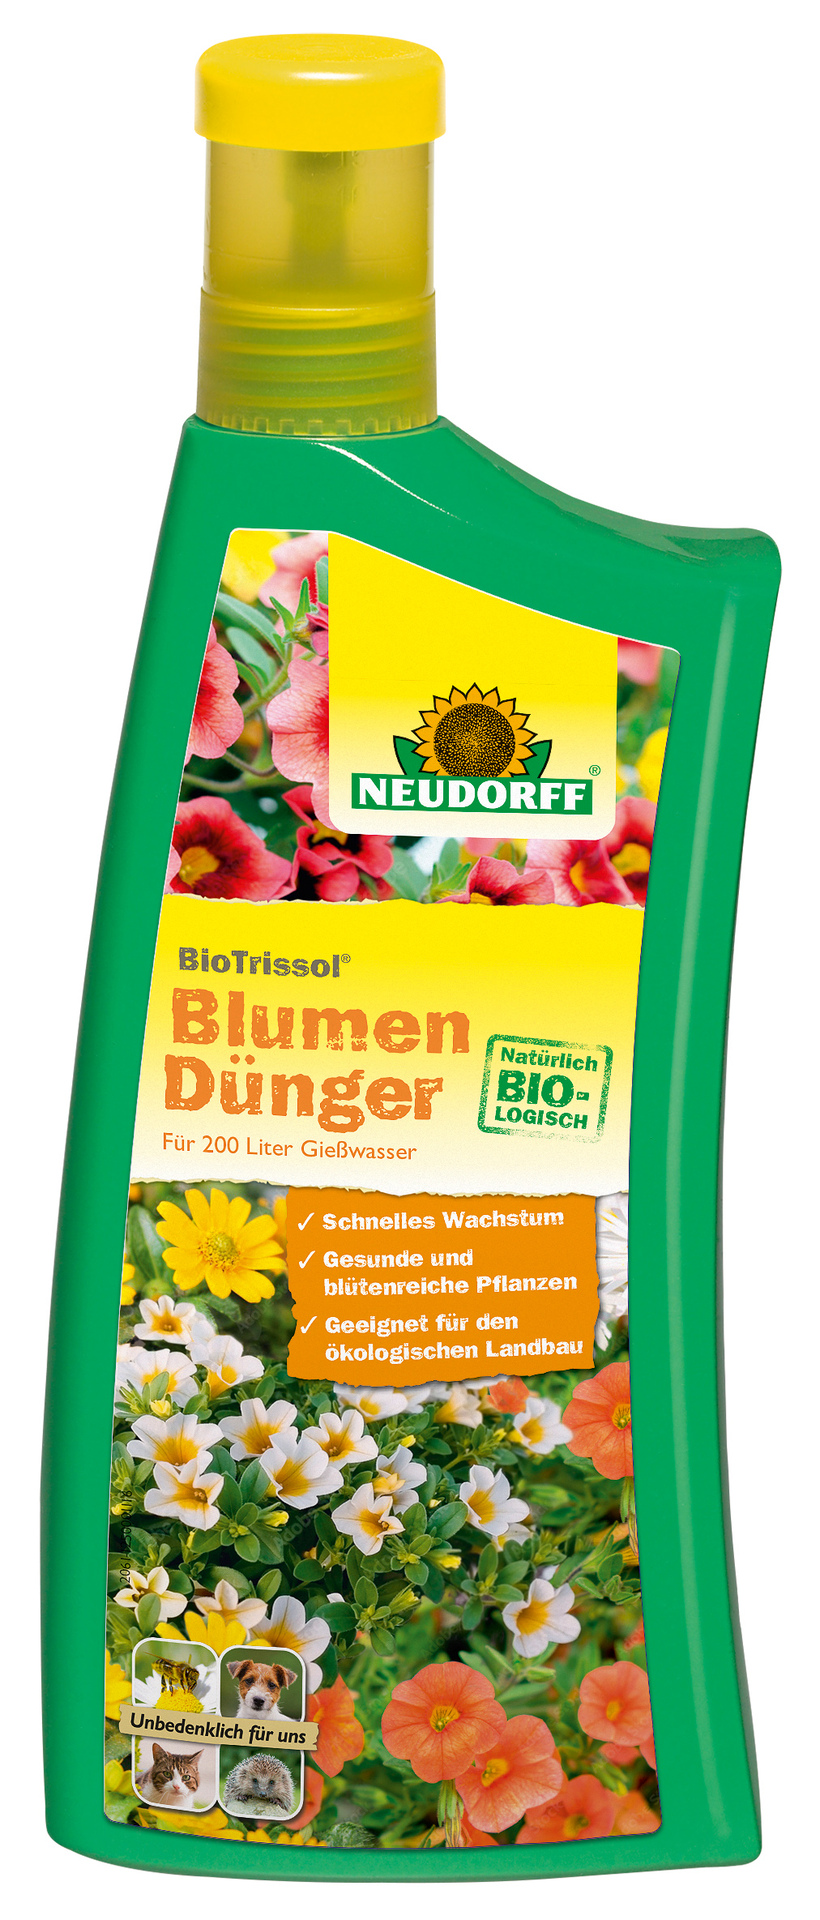 BioTrissol Blumen-Dünger